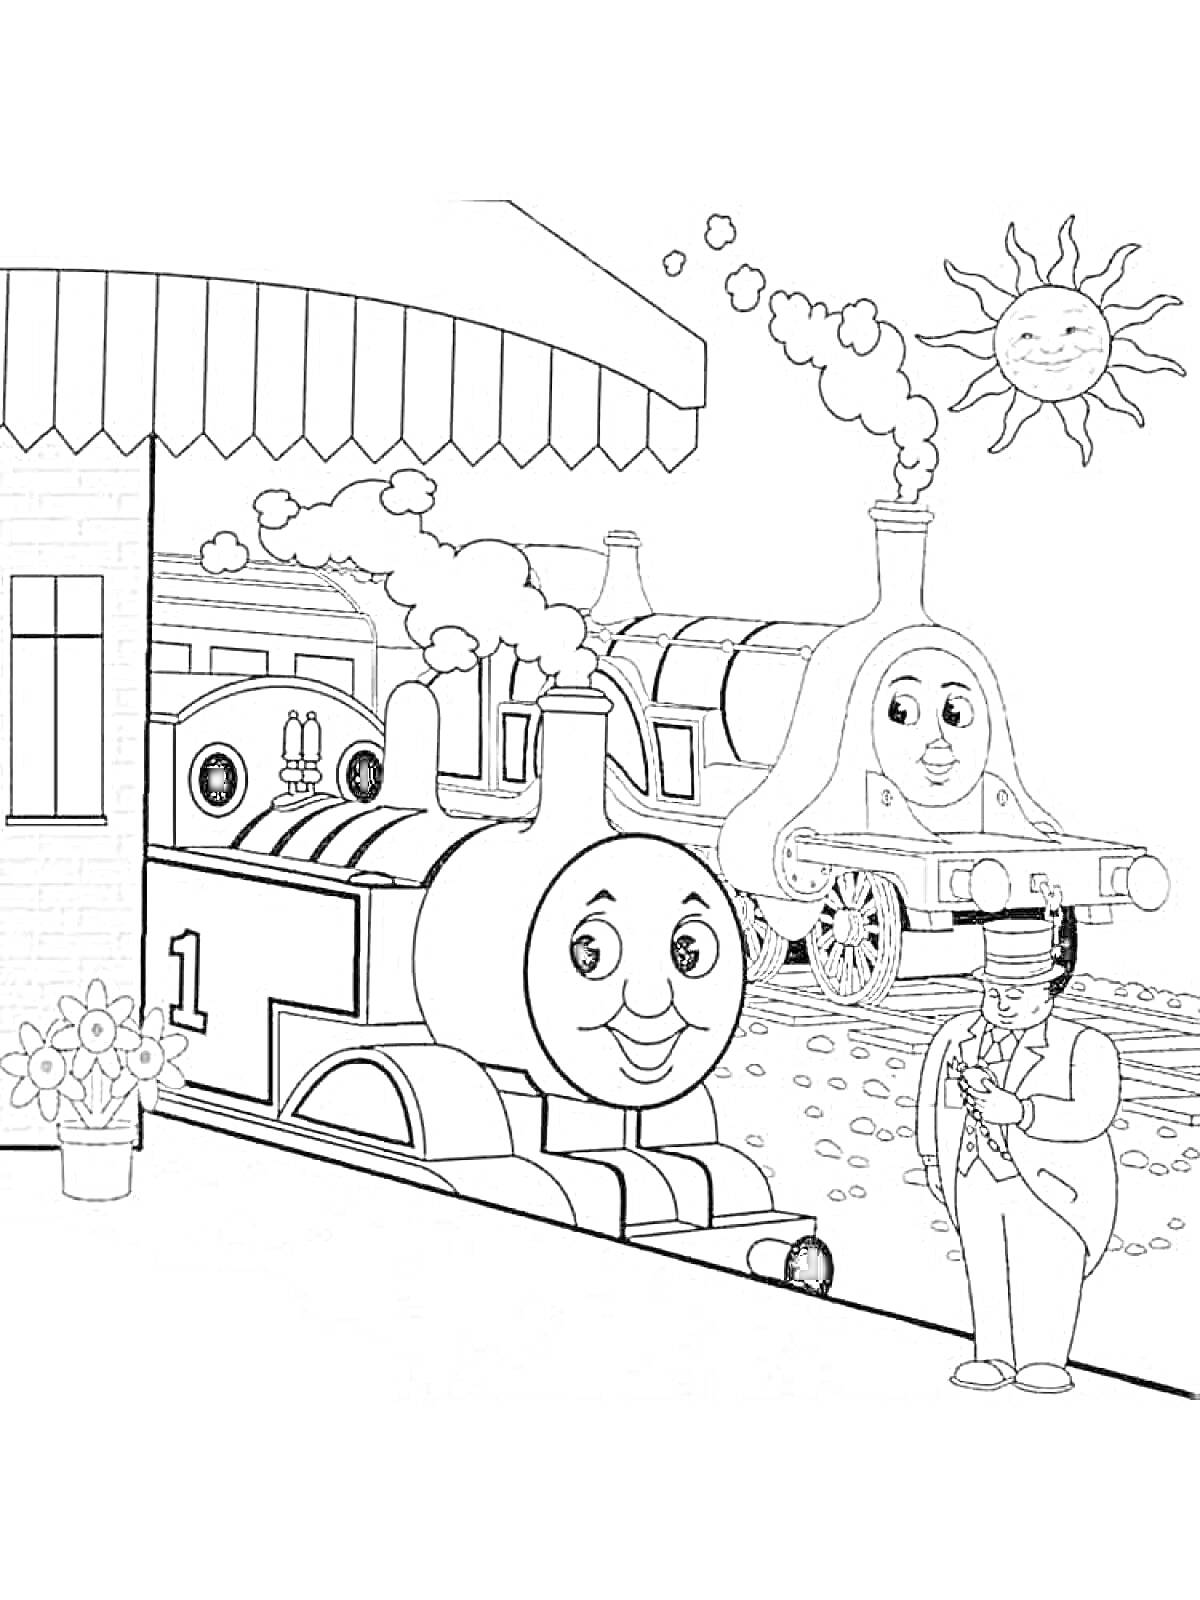 Раскраска Паровозик Томас, другие паровозики, человек-смотритель на перроне, здание вокзала, цветочный горшок, солнце